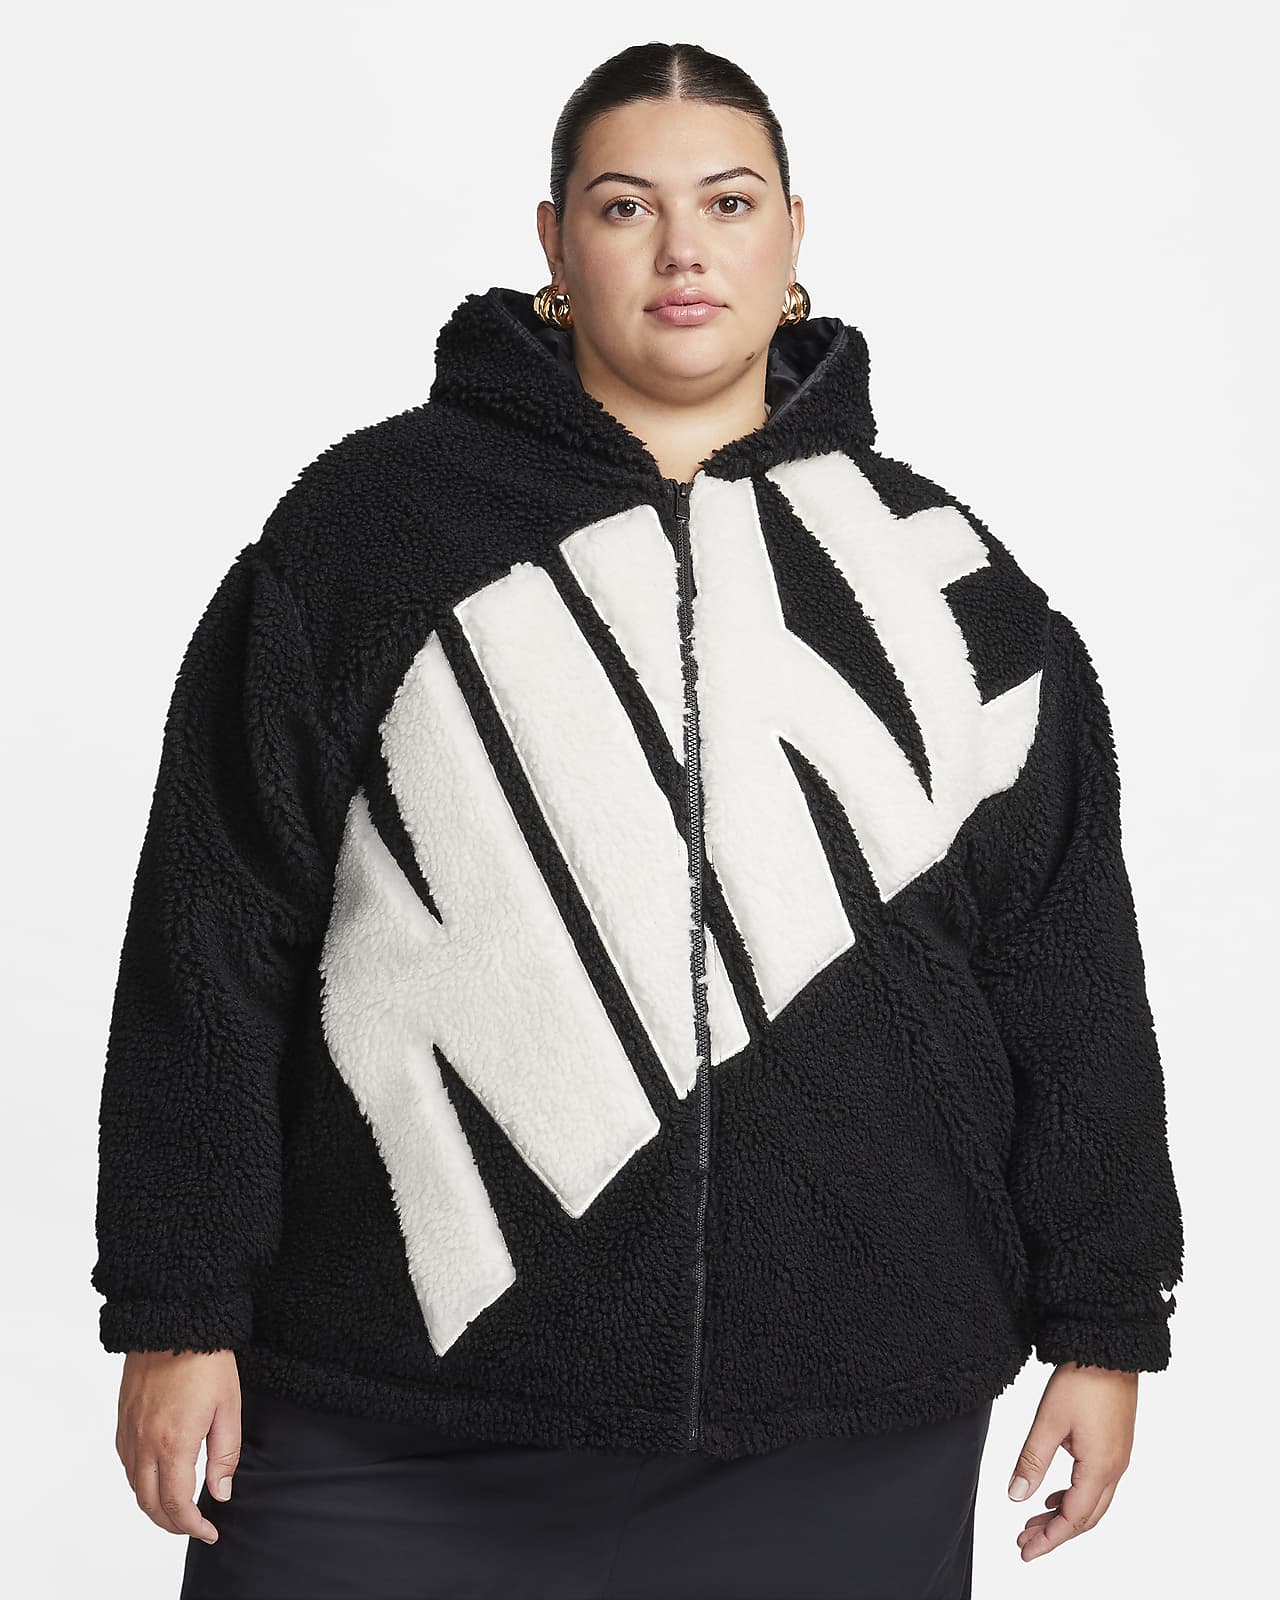 Dámská flísová bunda Nike Sportswear s logem a vysokým vlasem (větší velikost)